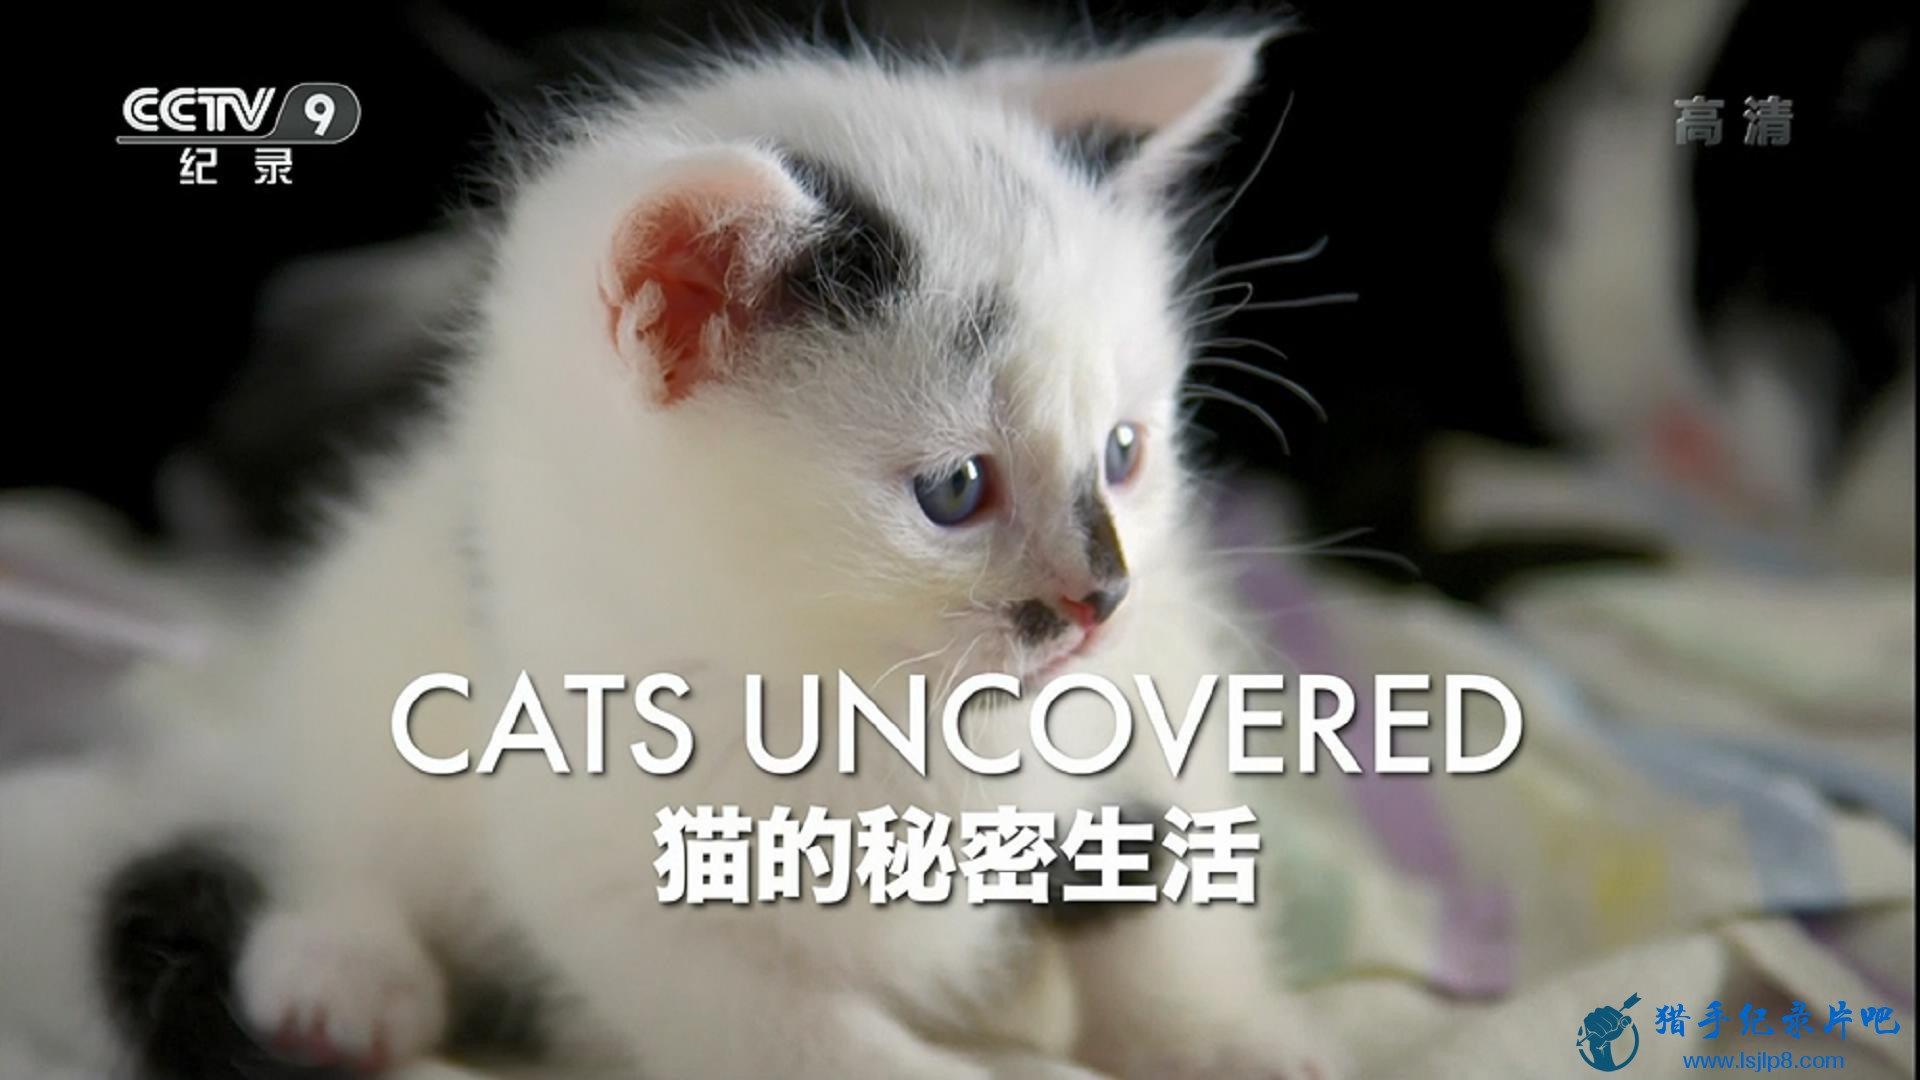 CCTV9 è Cats Uncovered (2017).EP01.èۿ A Cat's Eye View.1.jpg